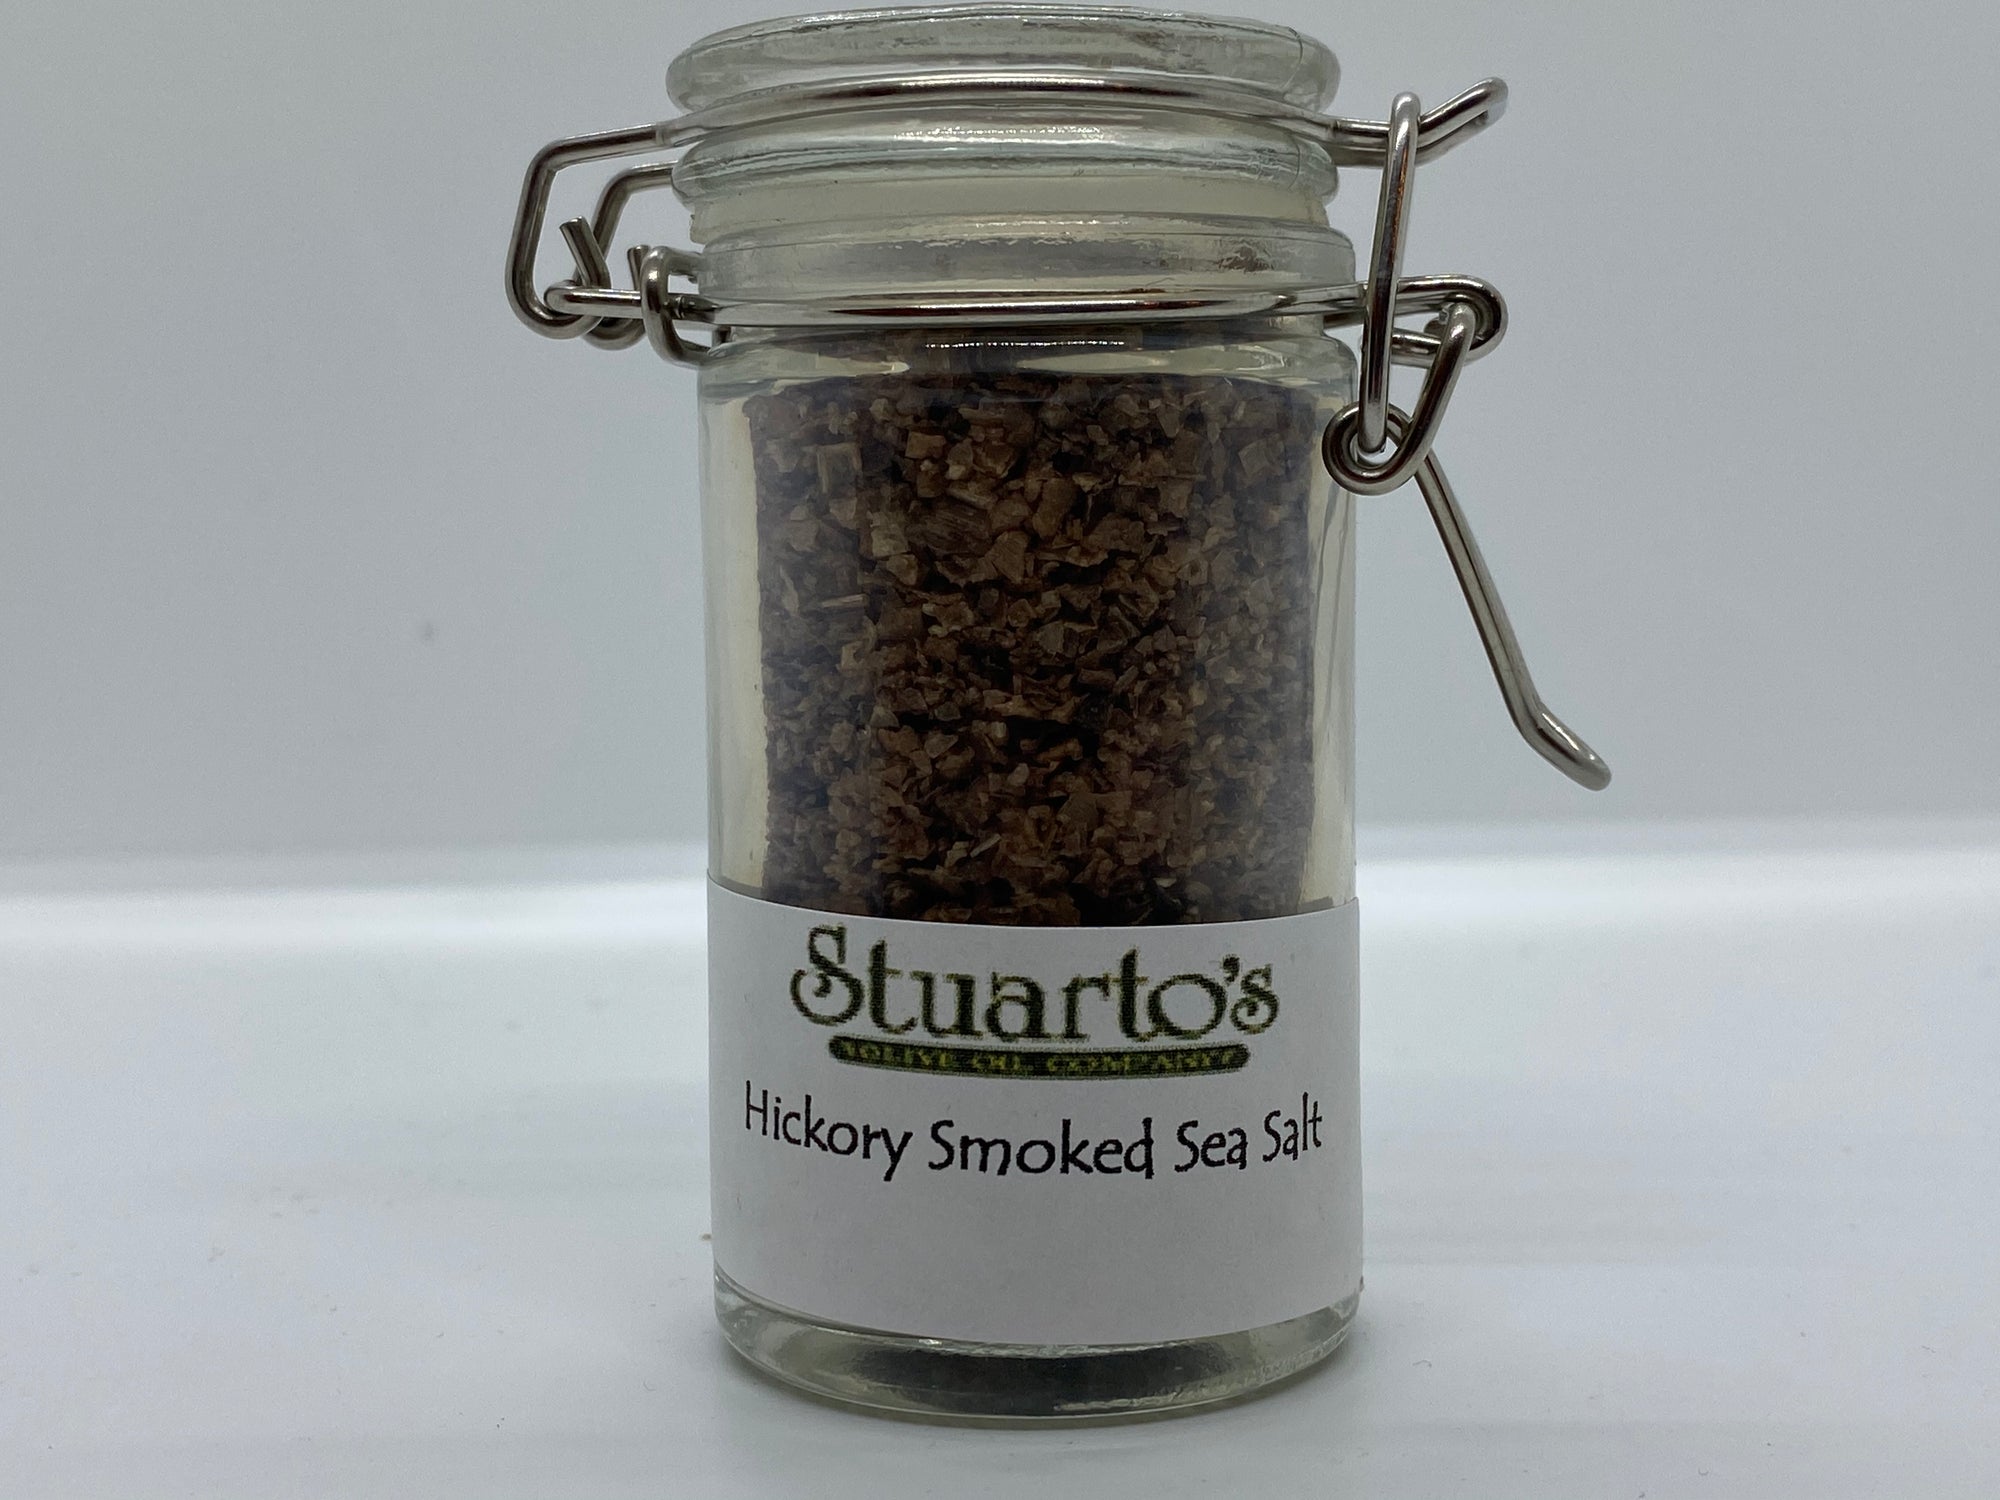 Hickory Smoked Sea Salt